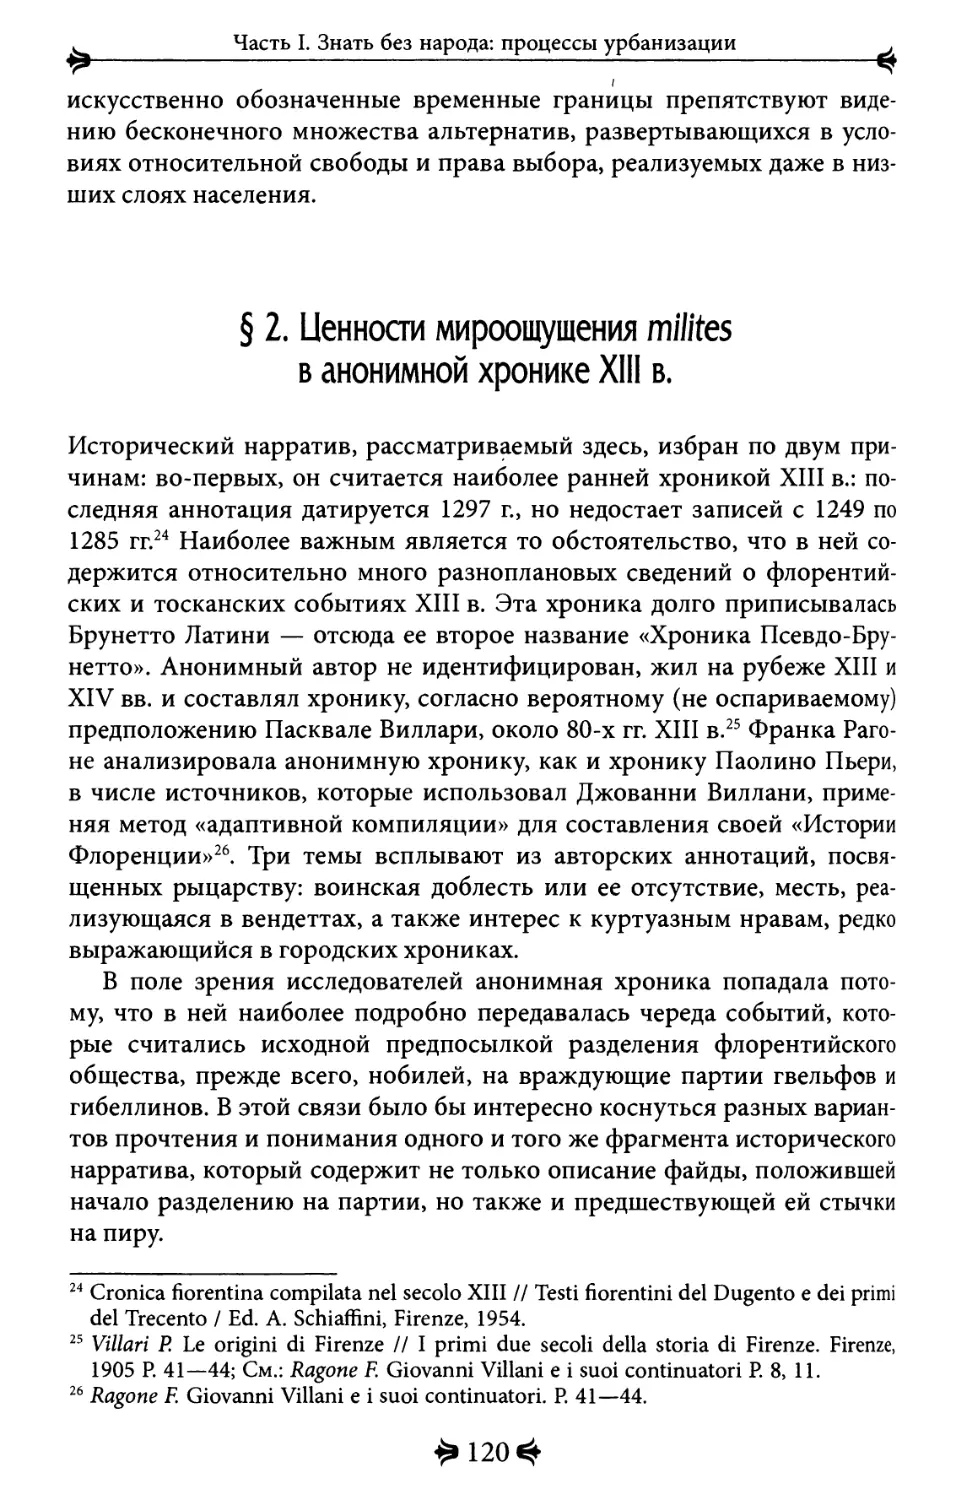 2. Ценности мироощущения milites в анонимной хронике XIII в.